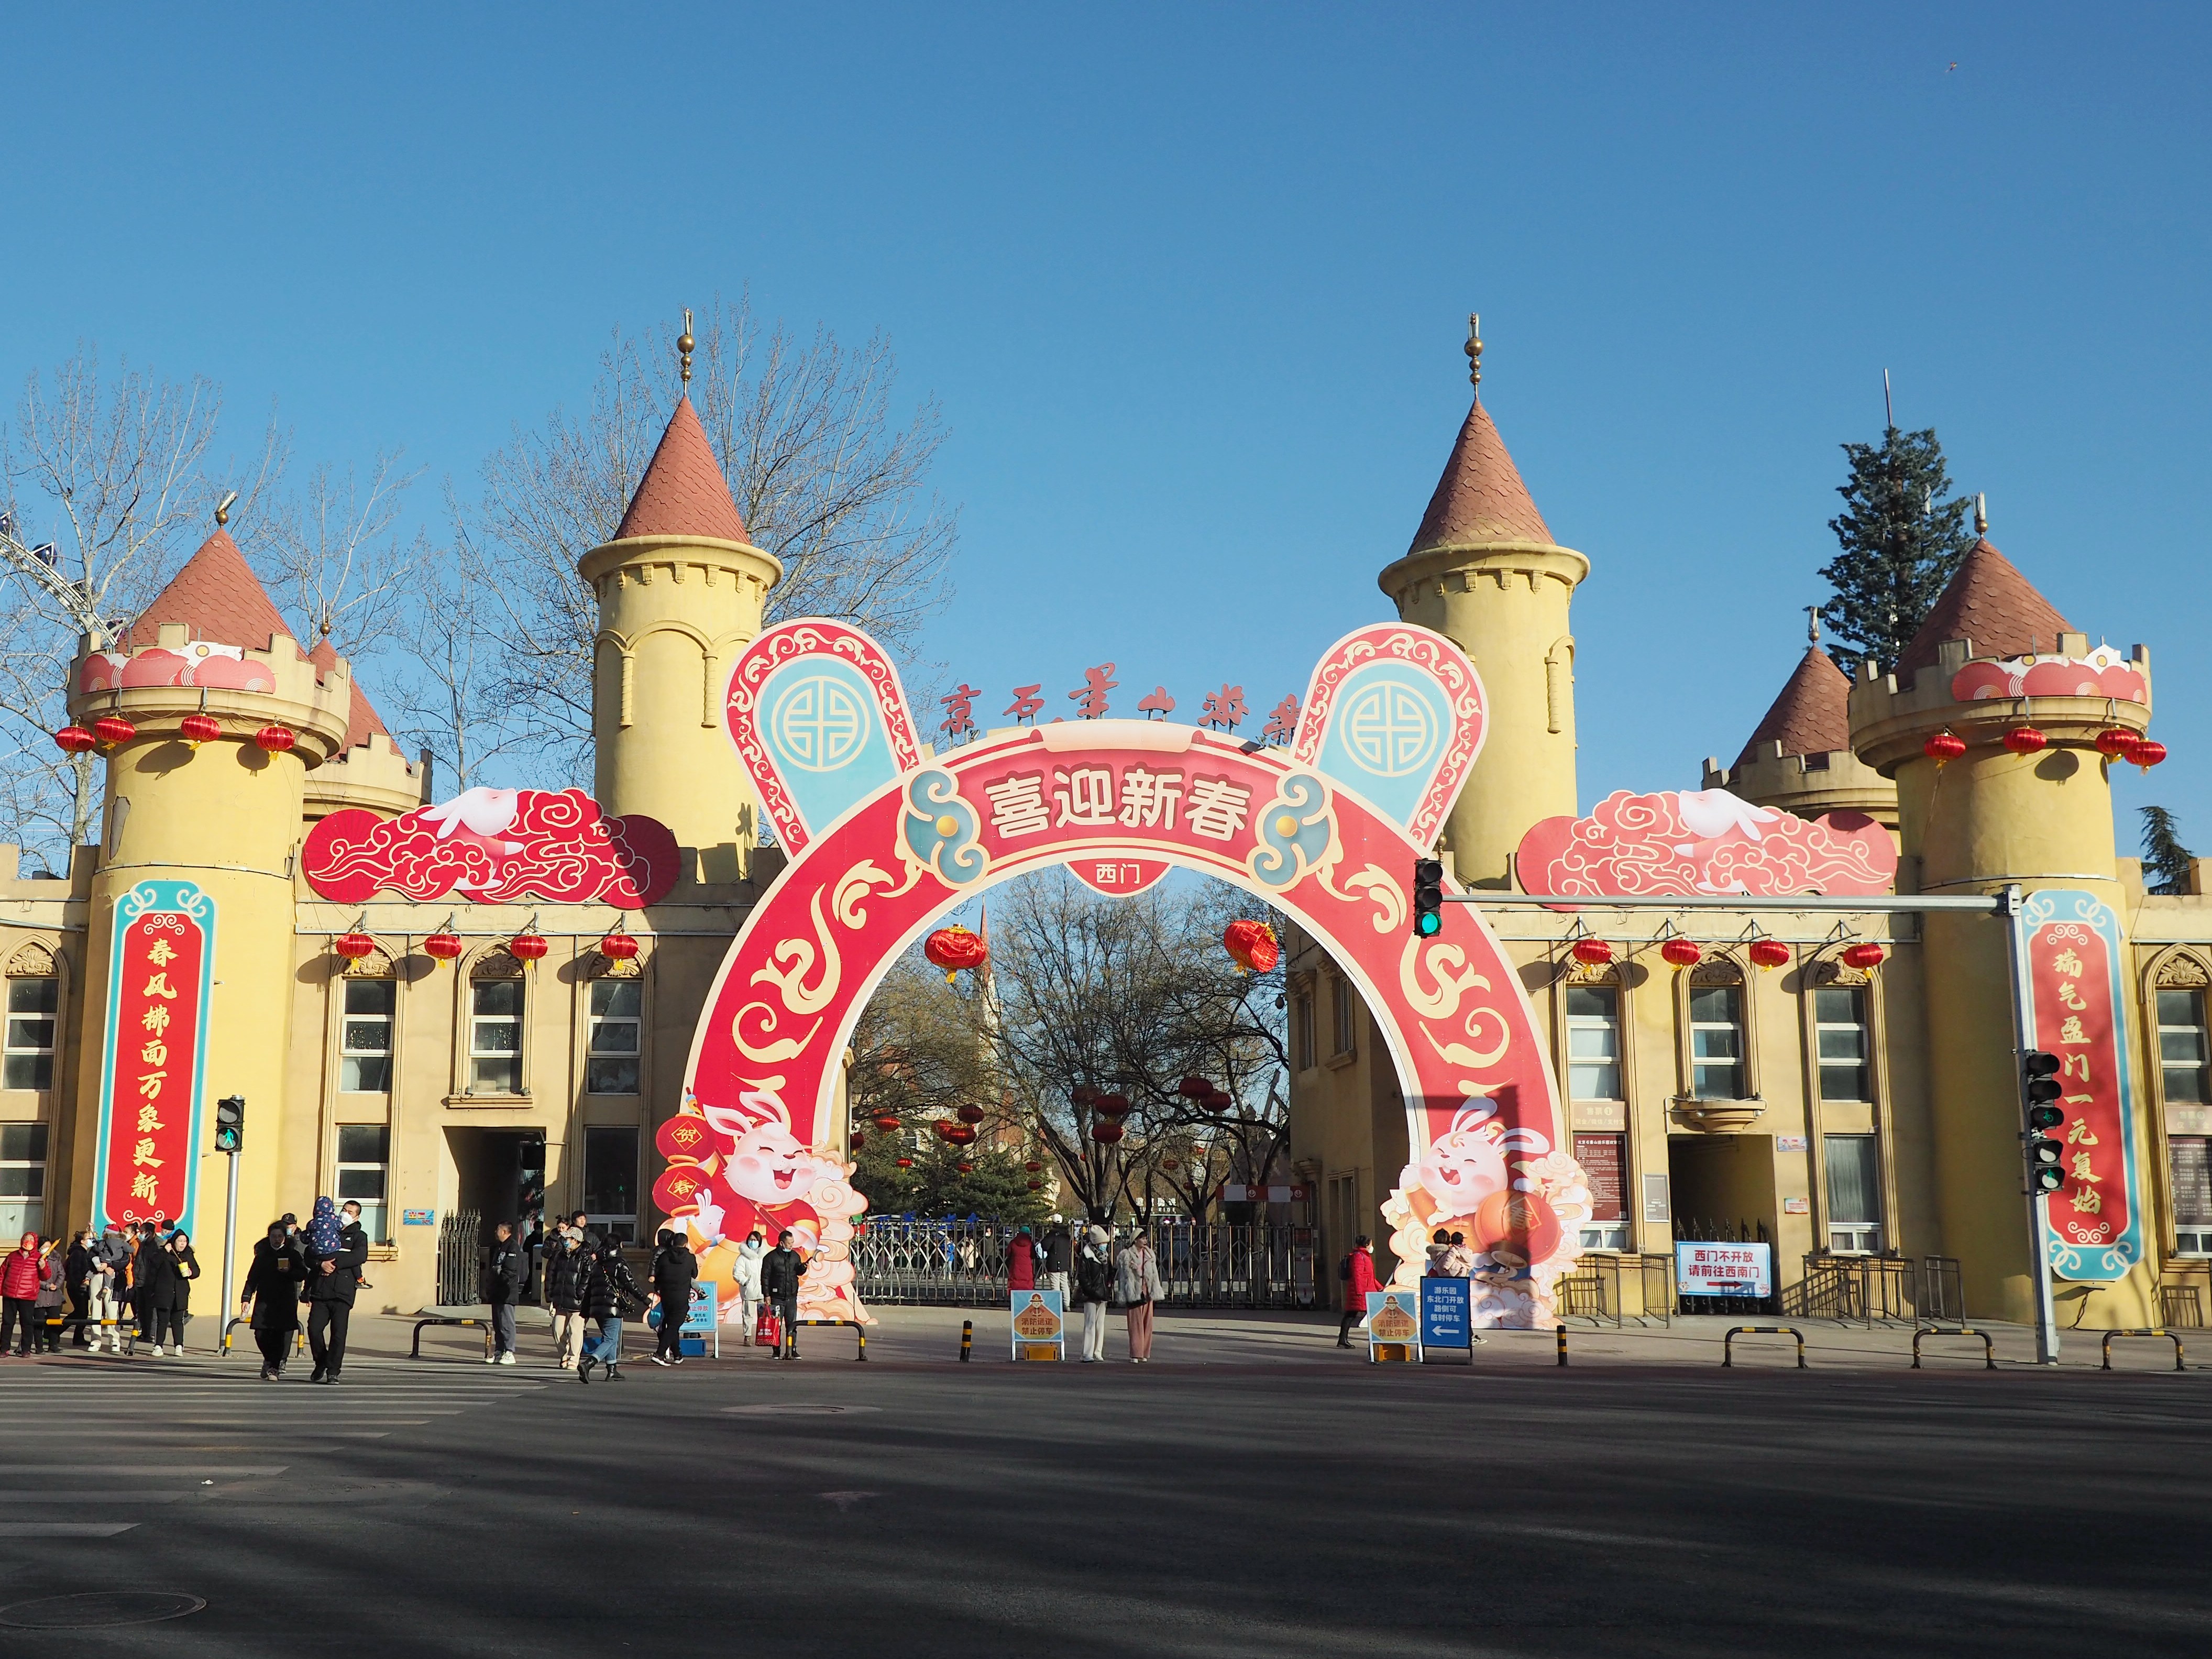 Trotz gemischter Kritiken ist der Vergnügungspark Shijingshan im Sommer normalerweise gut besucht